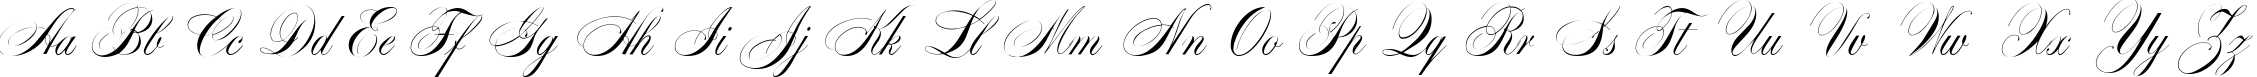 Пример написания английского алфавита шрифтом Markiz de Sad script